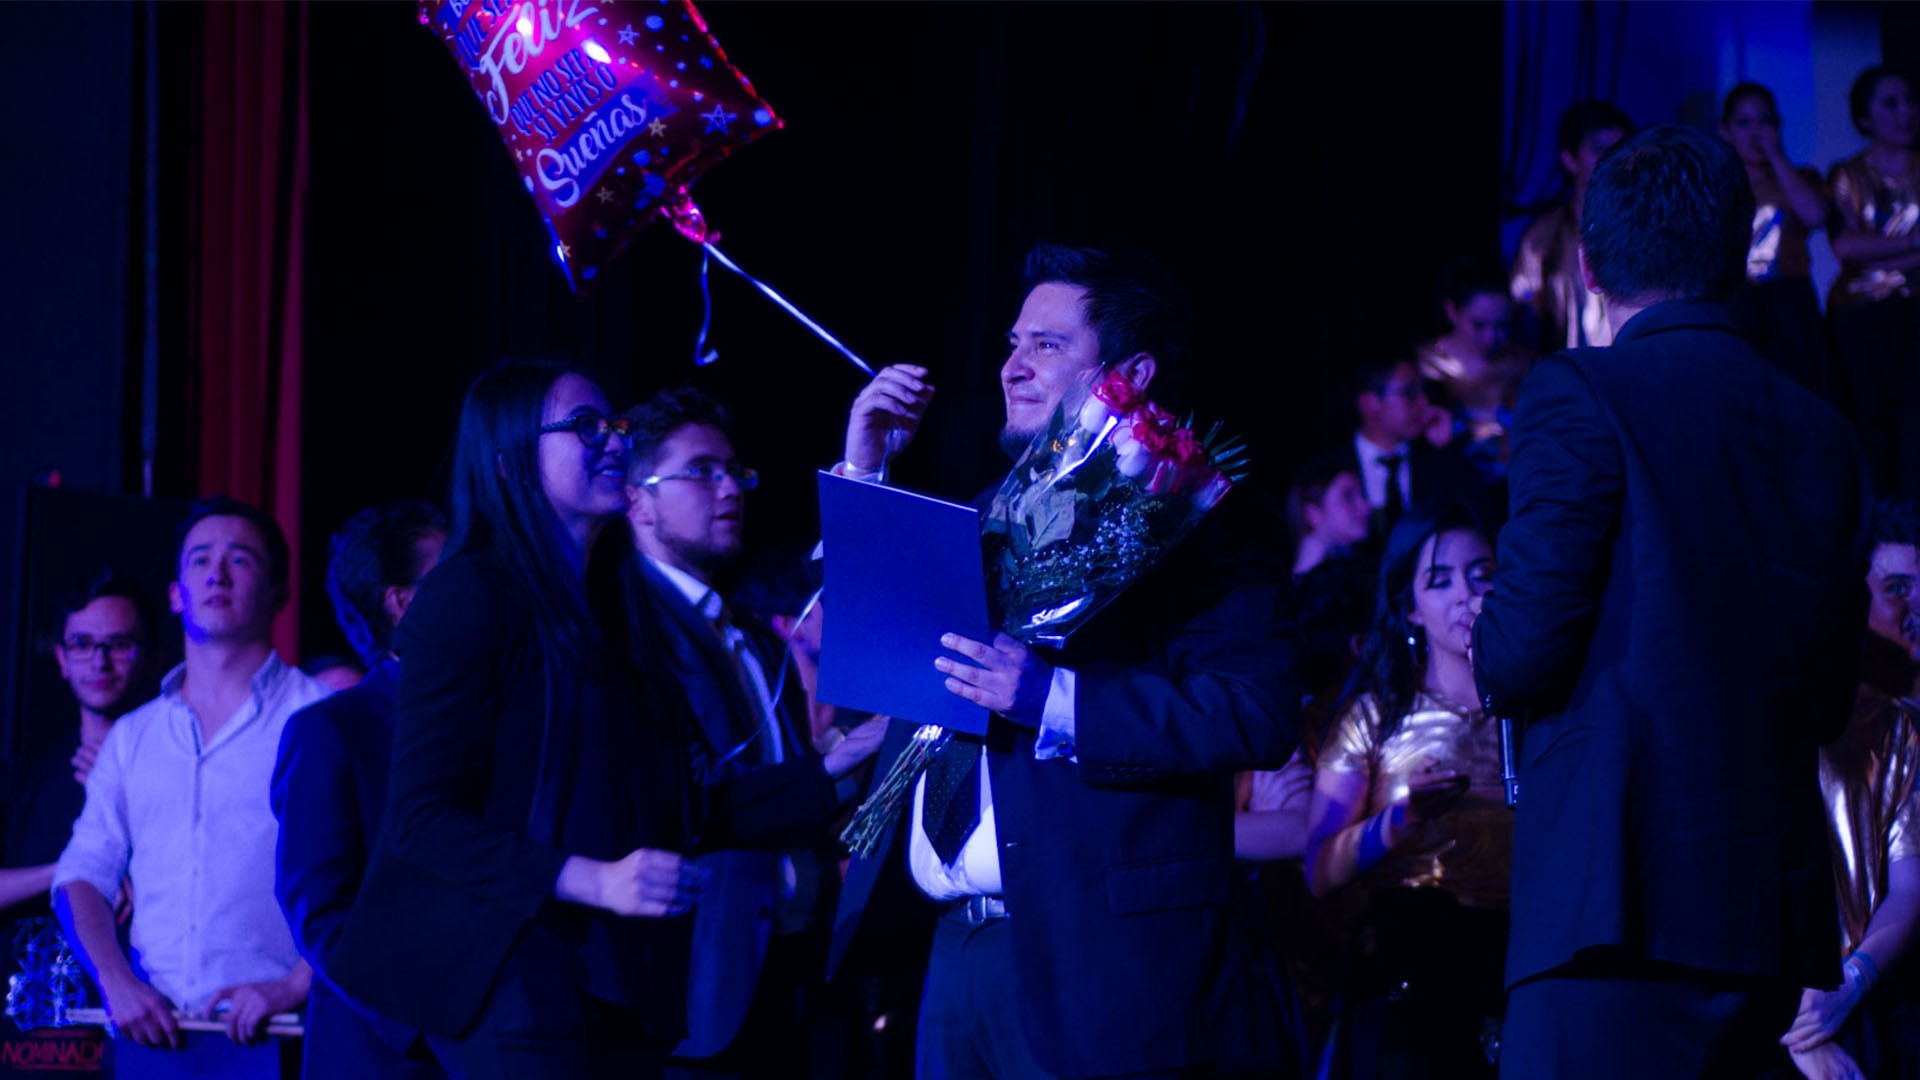 Alumnos de Tec Campus Toluca brindaron concierto ensamble Nominados